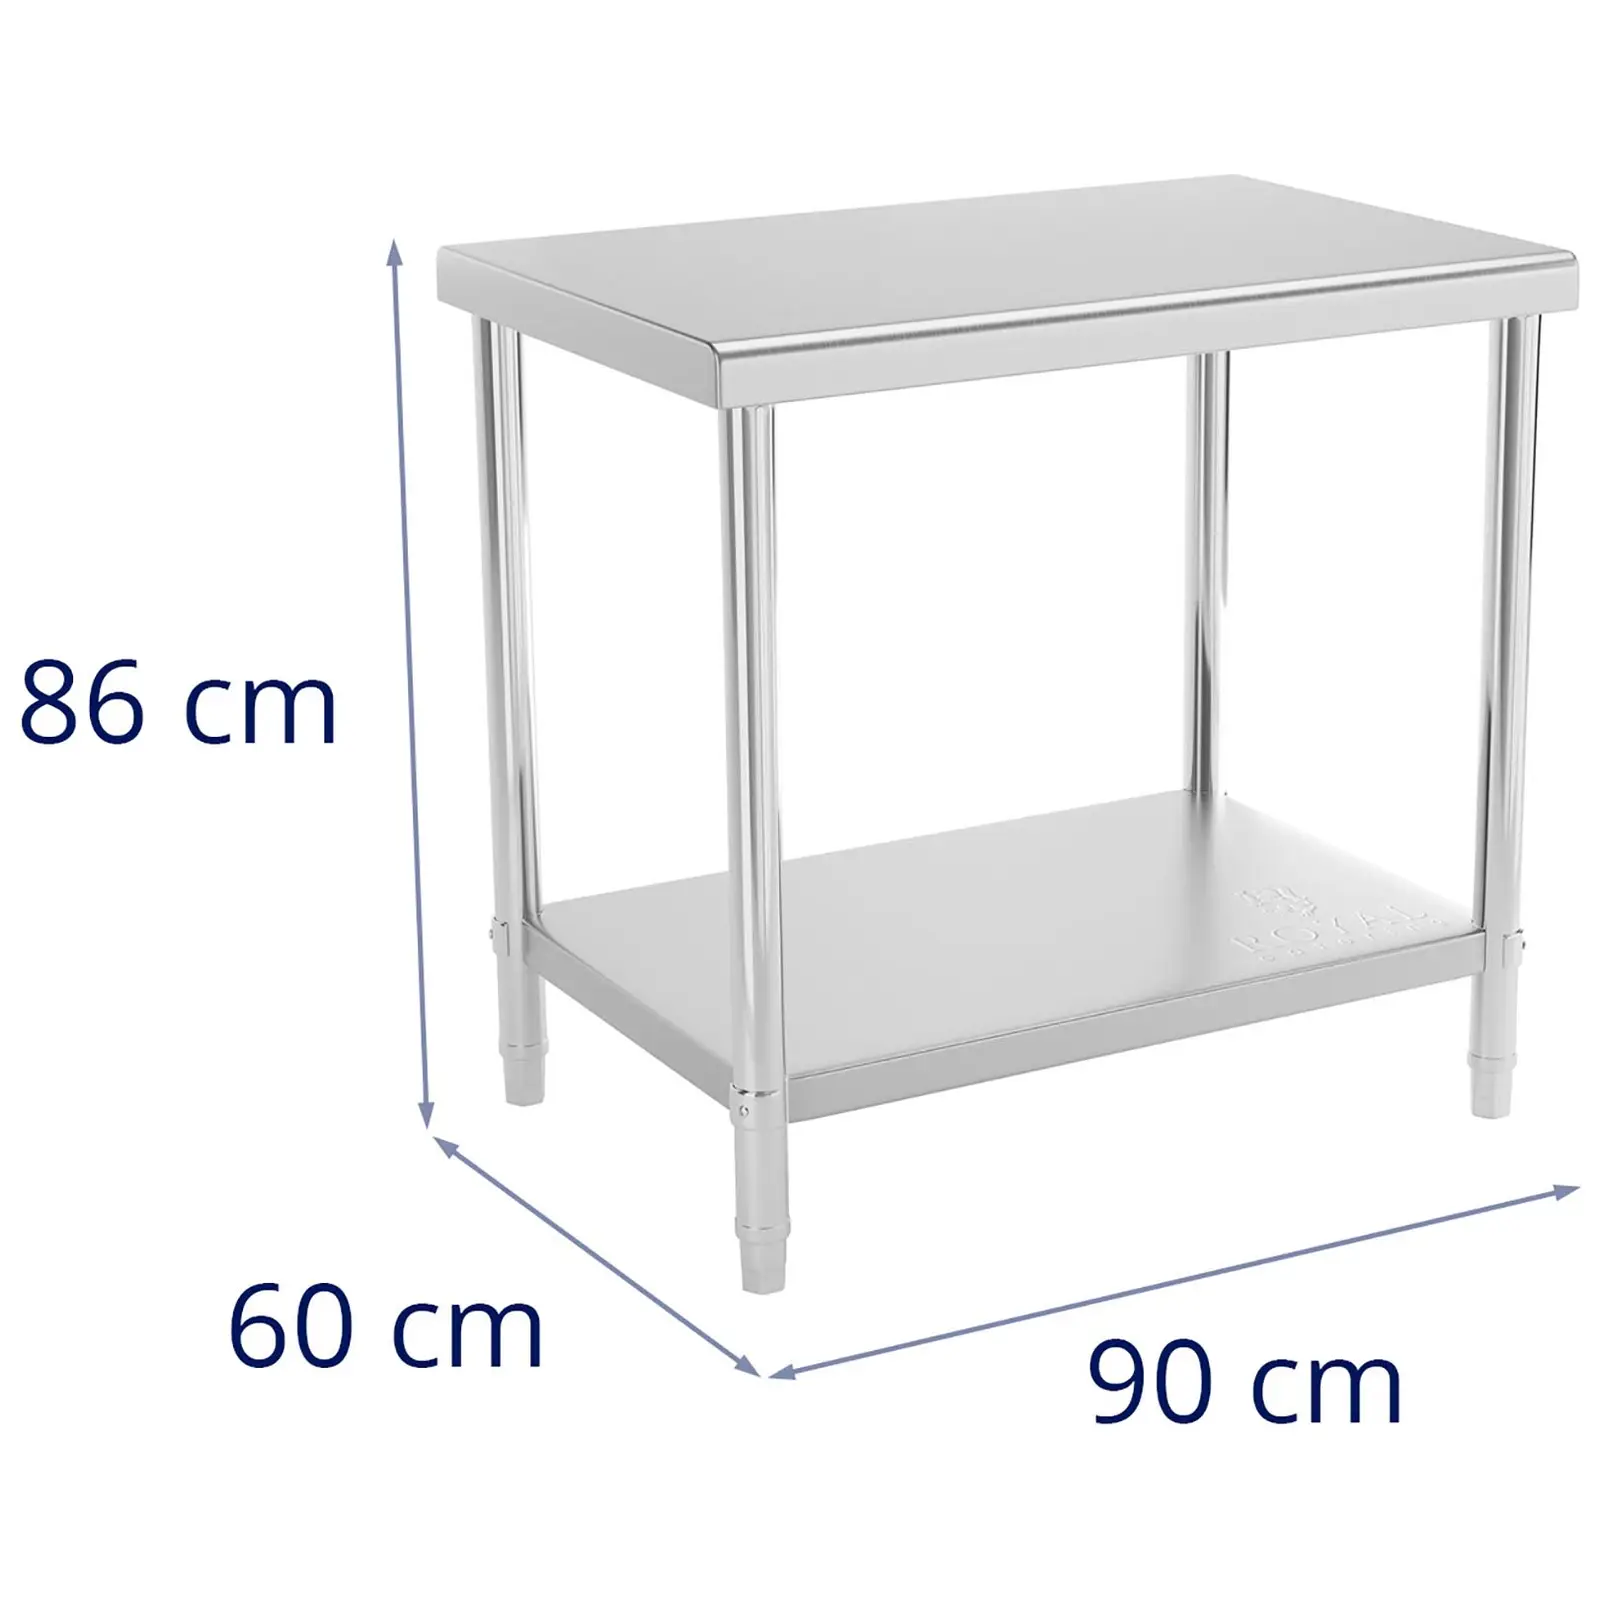 Rozsdamentes acél asztal - 90 x 60 cm - 210 kg terhelhetőség